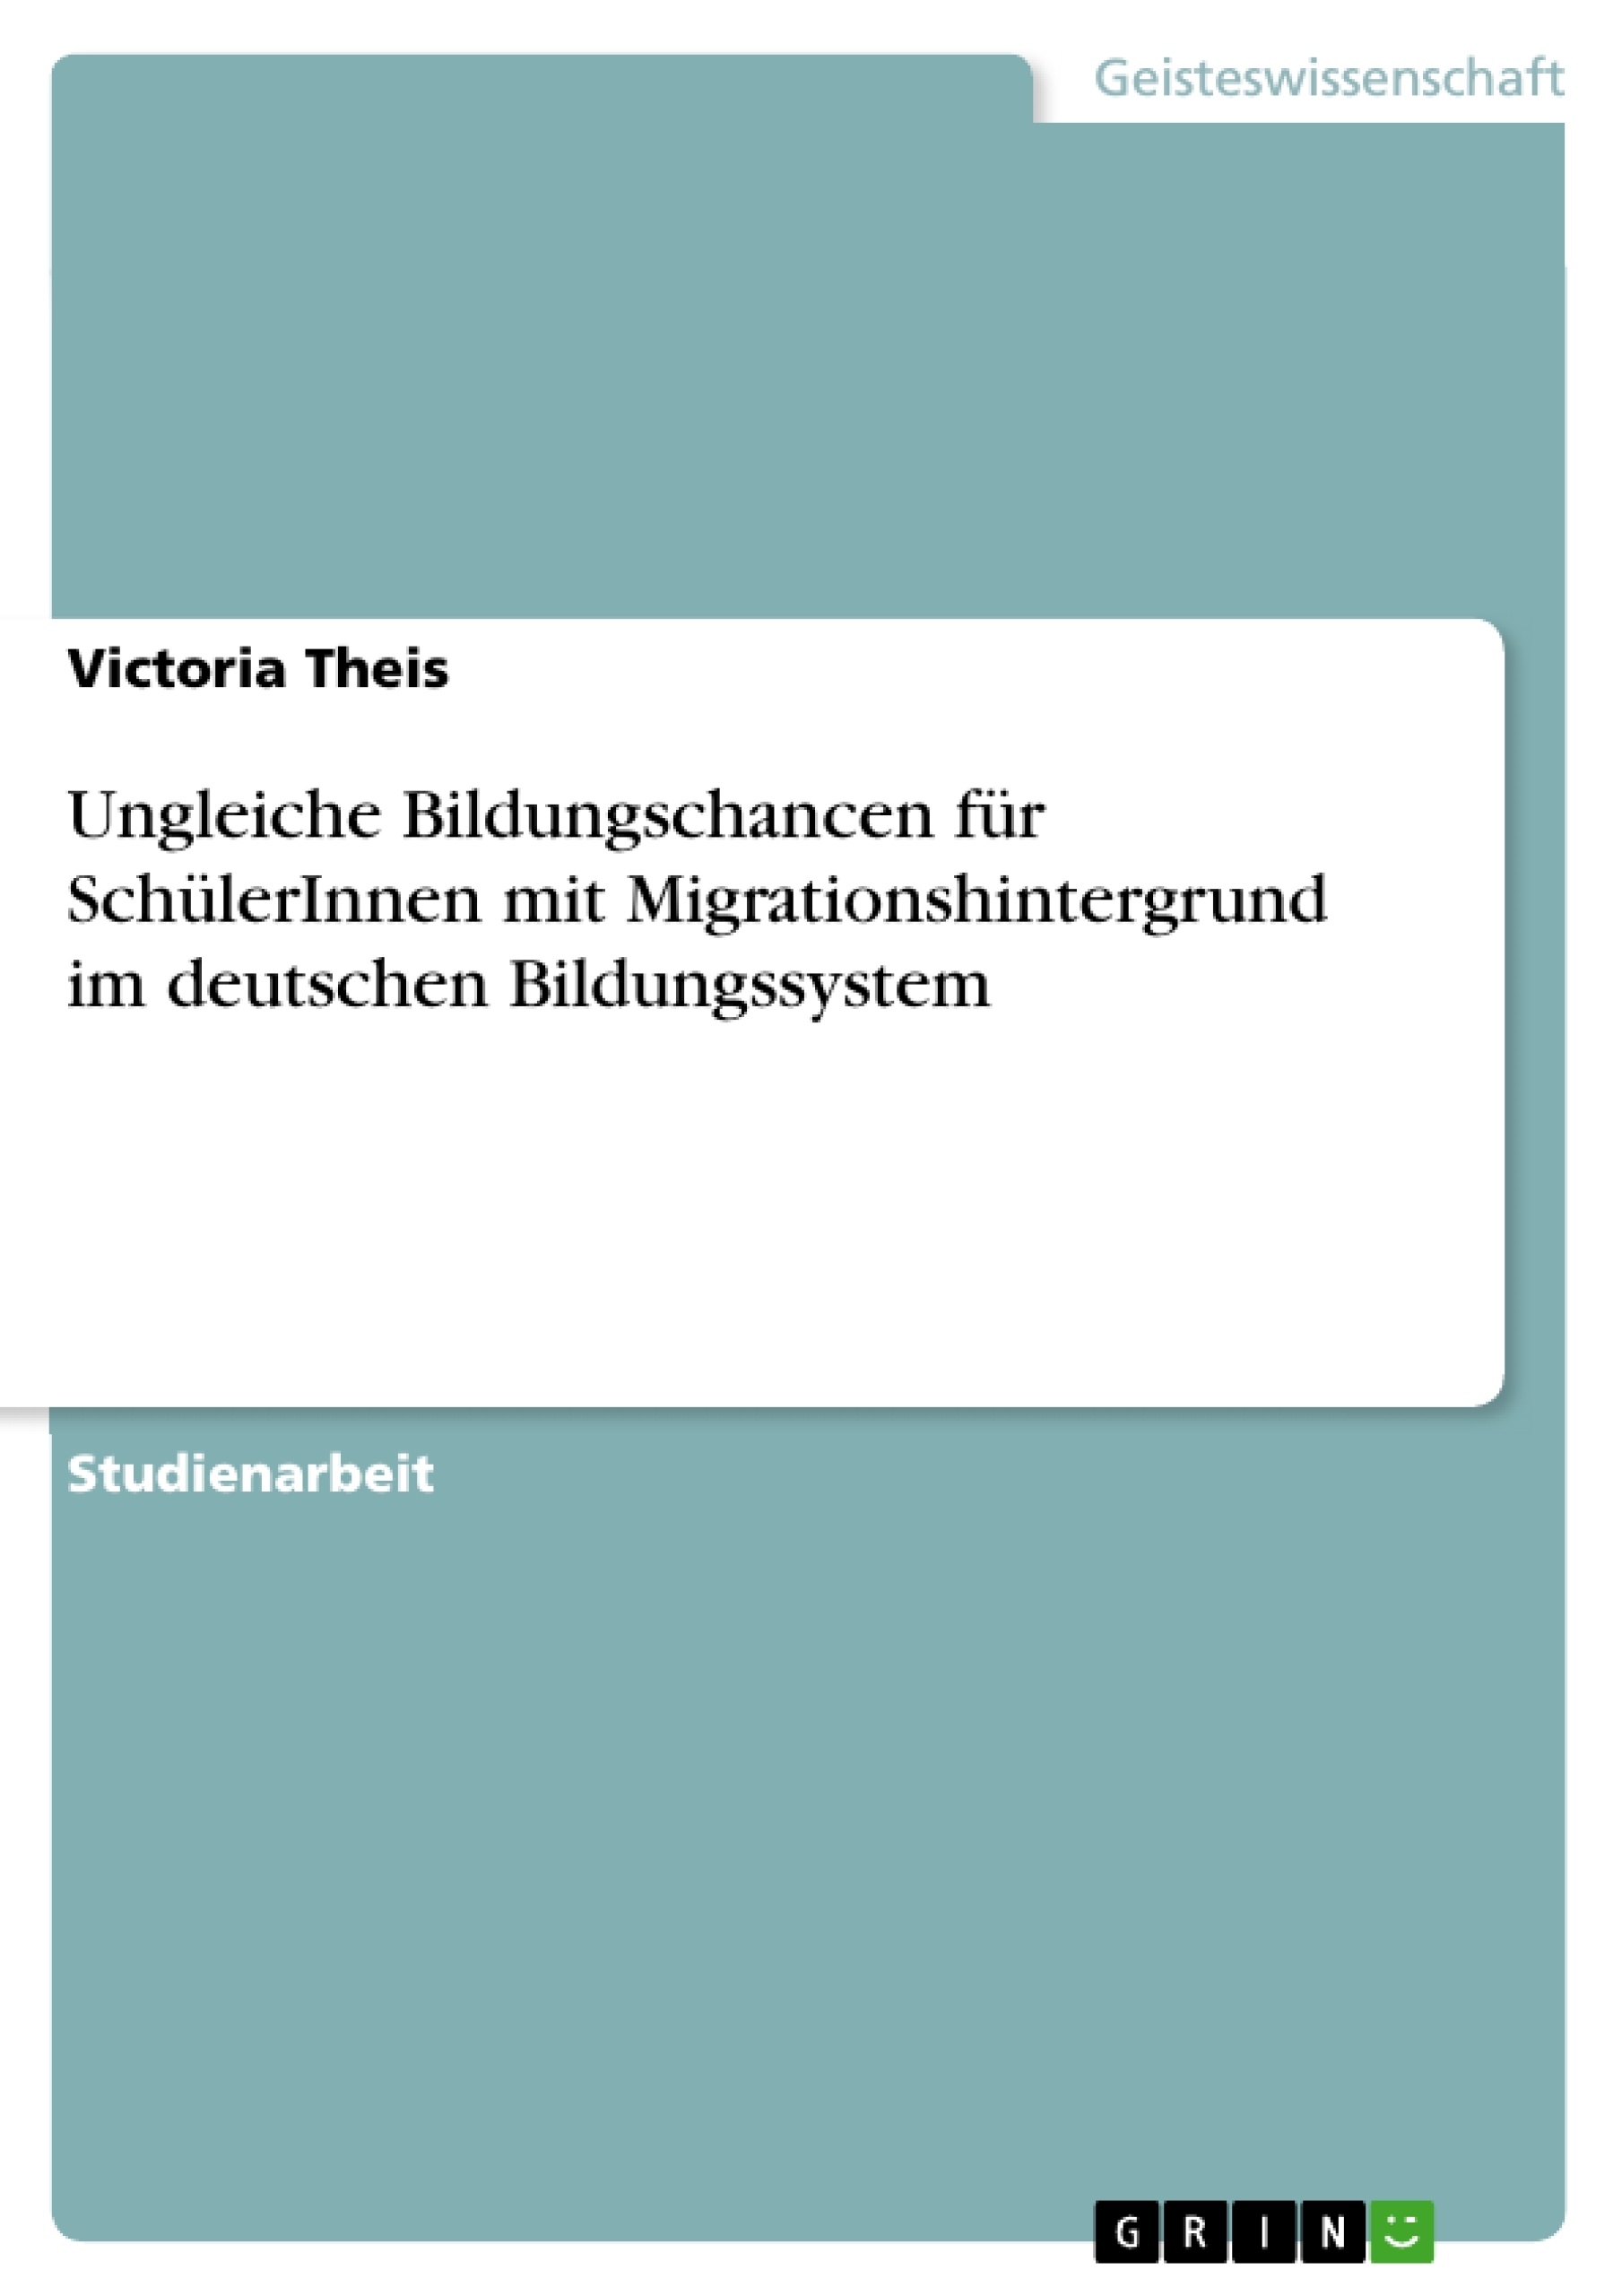 Title: Ungleiche Bildungschancen für SchülerInnen mit Migrationshintergrund im deutschen Bildungssystem